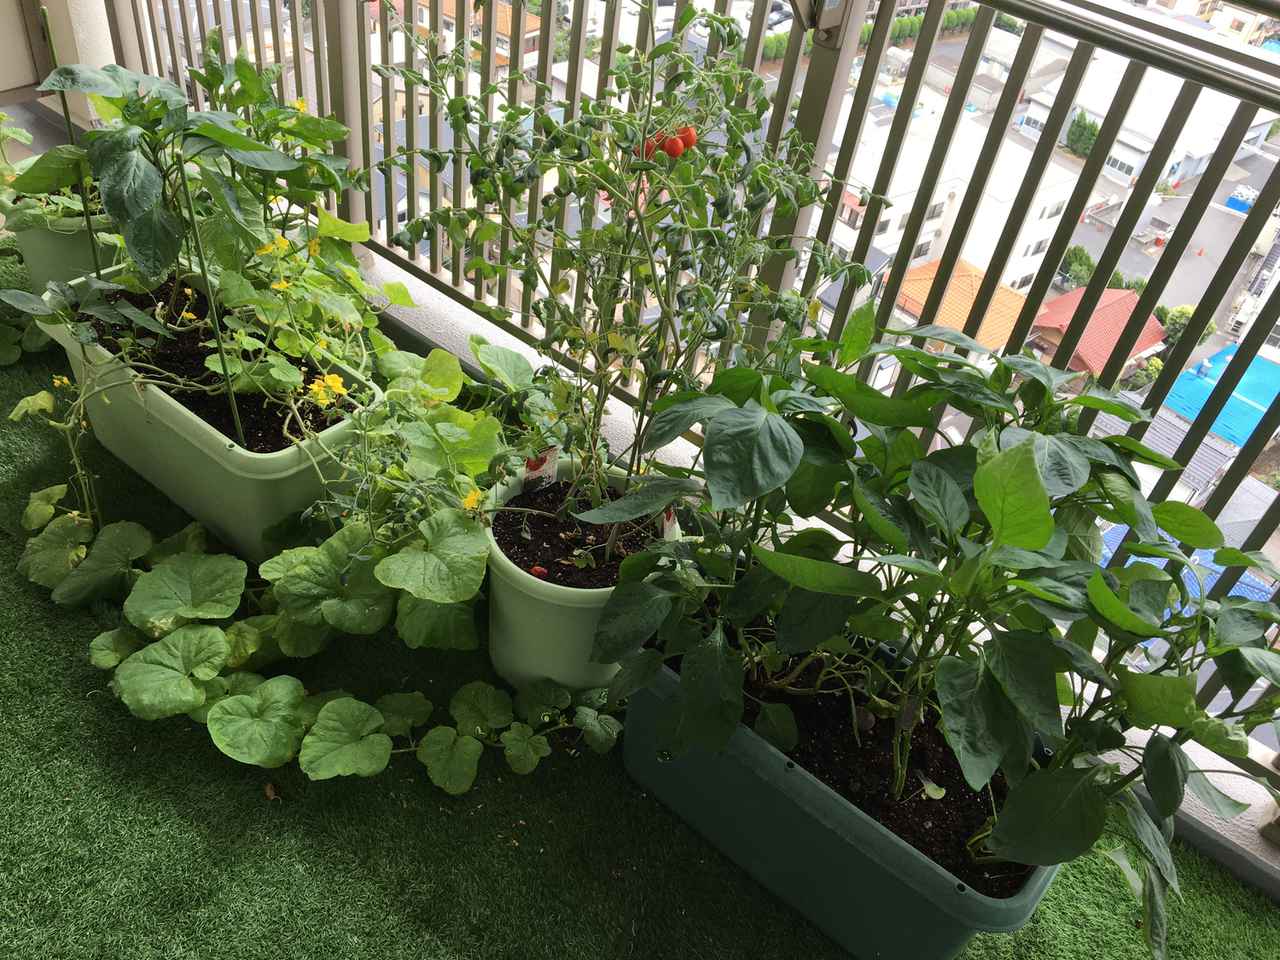 初めての家庭菜園プランターで簡単に育てられる野菜作り！植え方の工夫で虫対策もOK！(お役立ちキャンプ情報 2020年06月10日) - 日本気象協会  tenki.jp